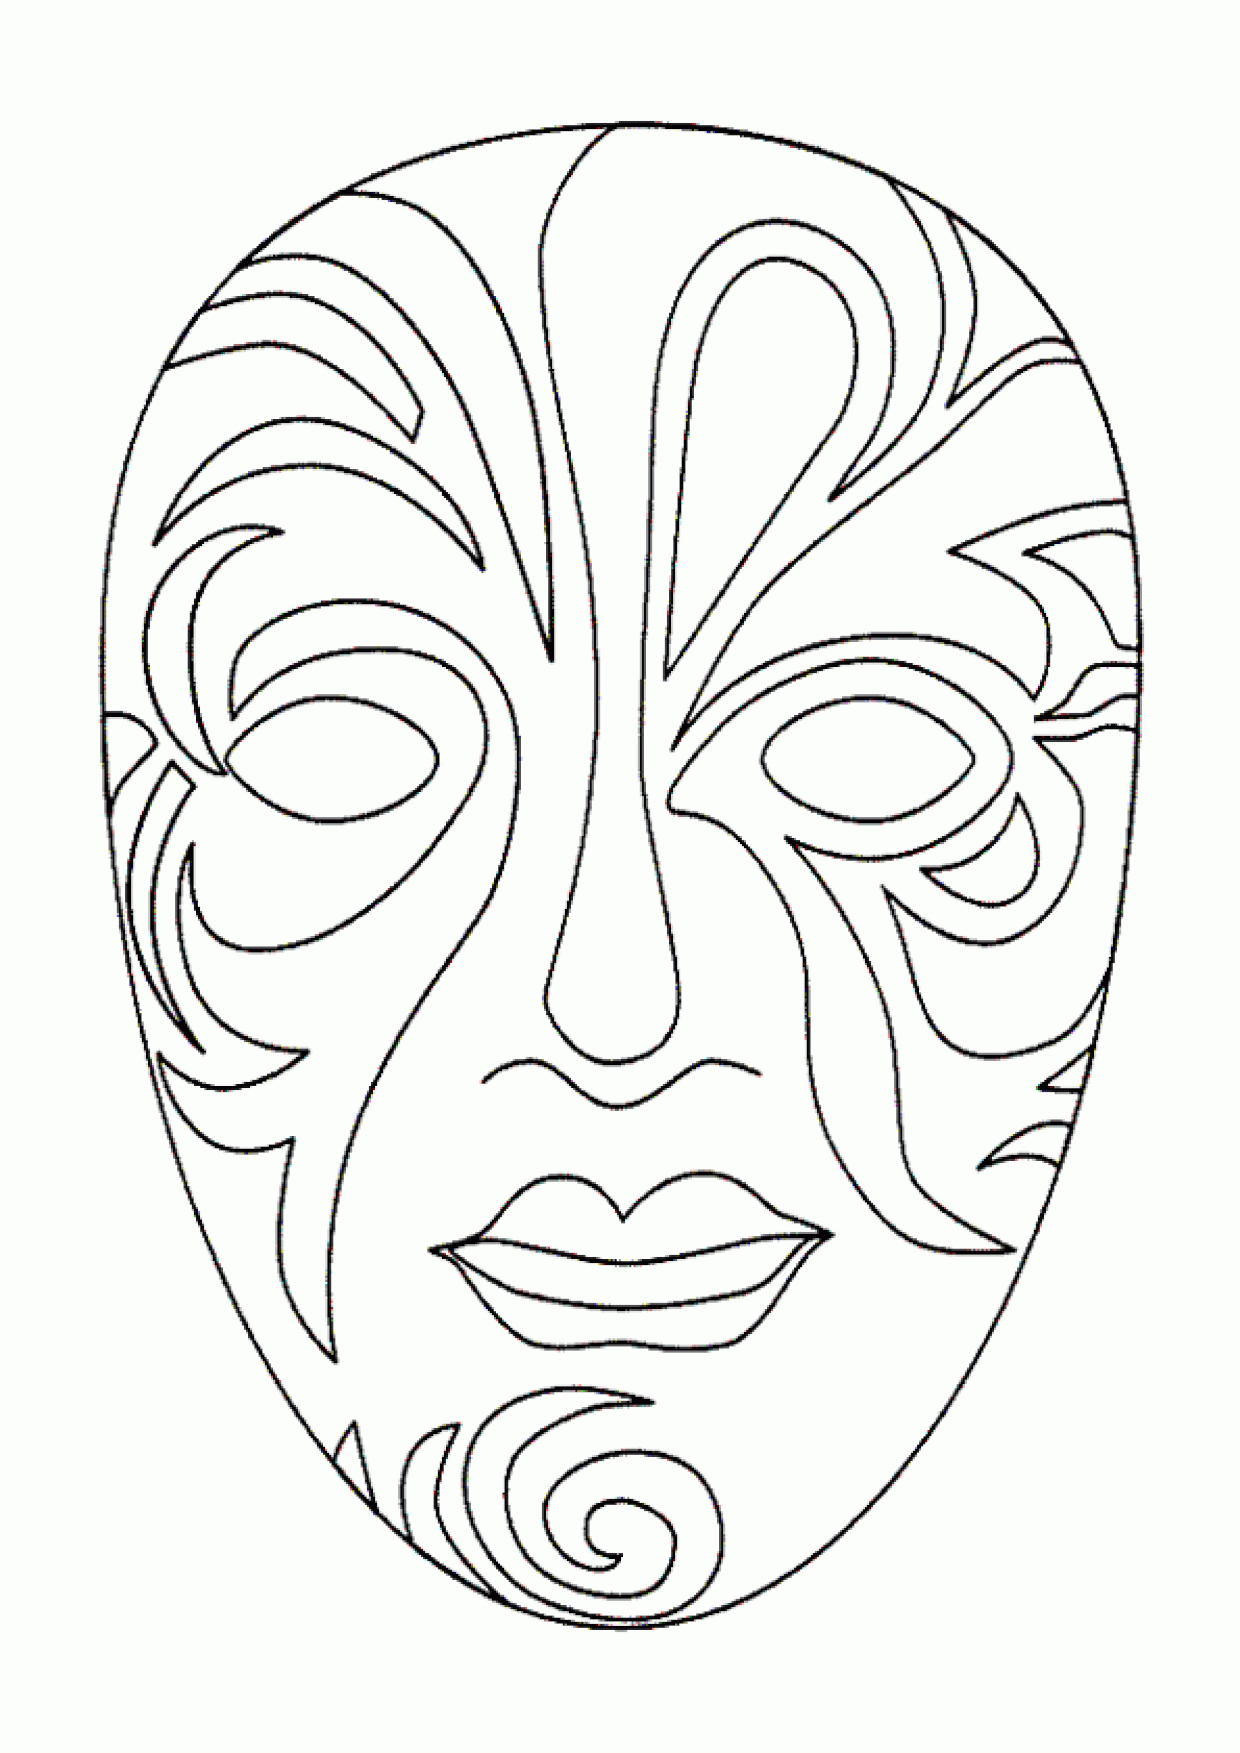 Эскиз маски для лица